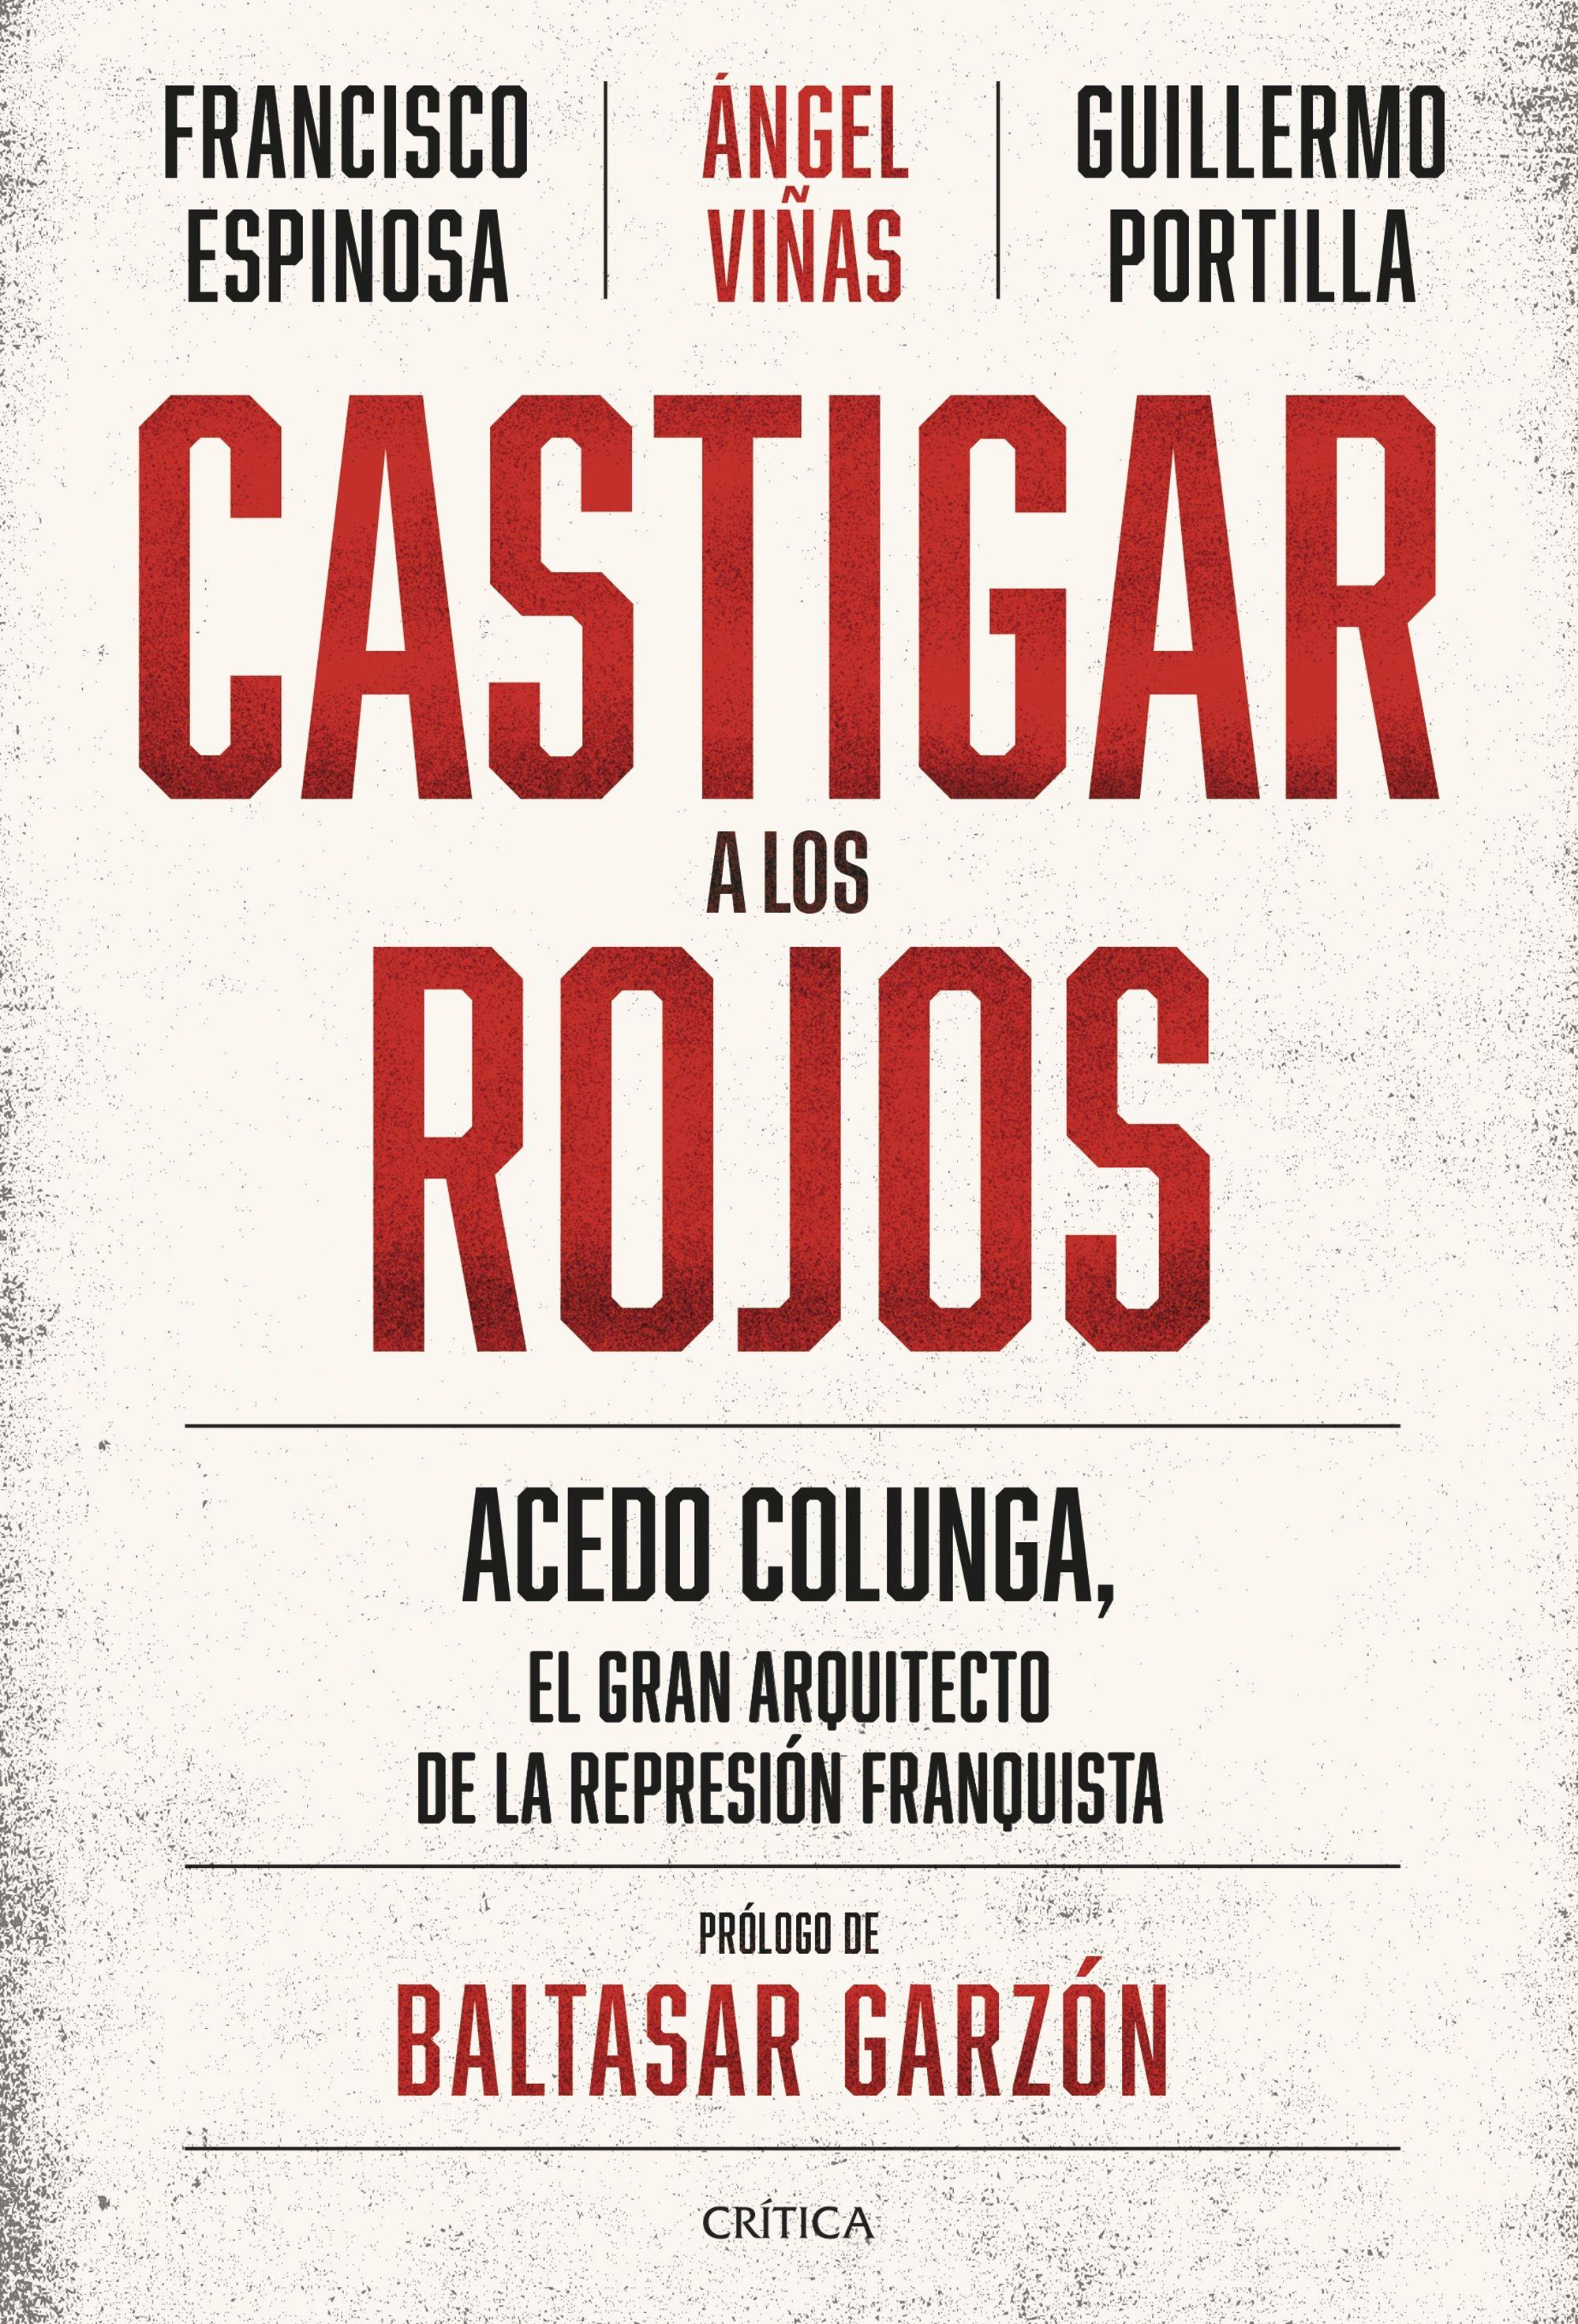 Castigar a los rojos "Acedo Colunga, el gran arquitecto de la represión franquista". 